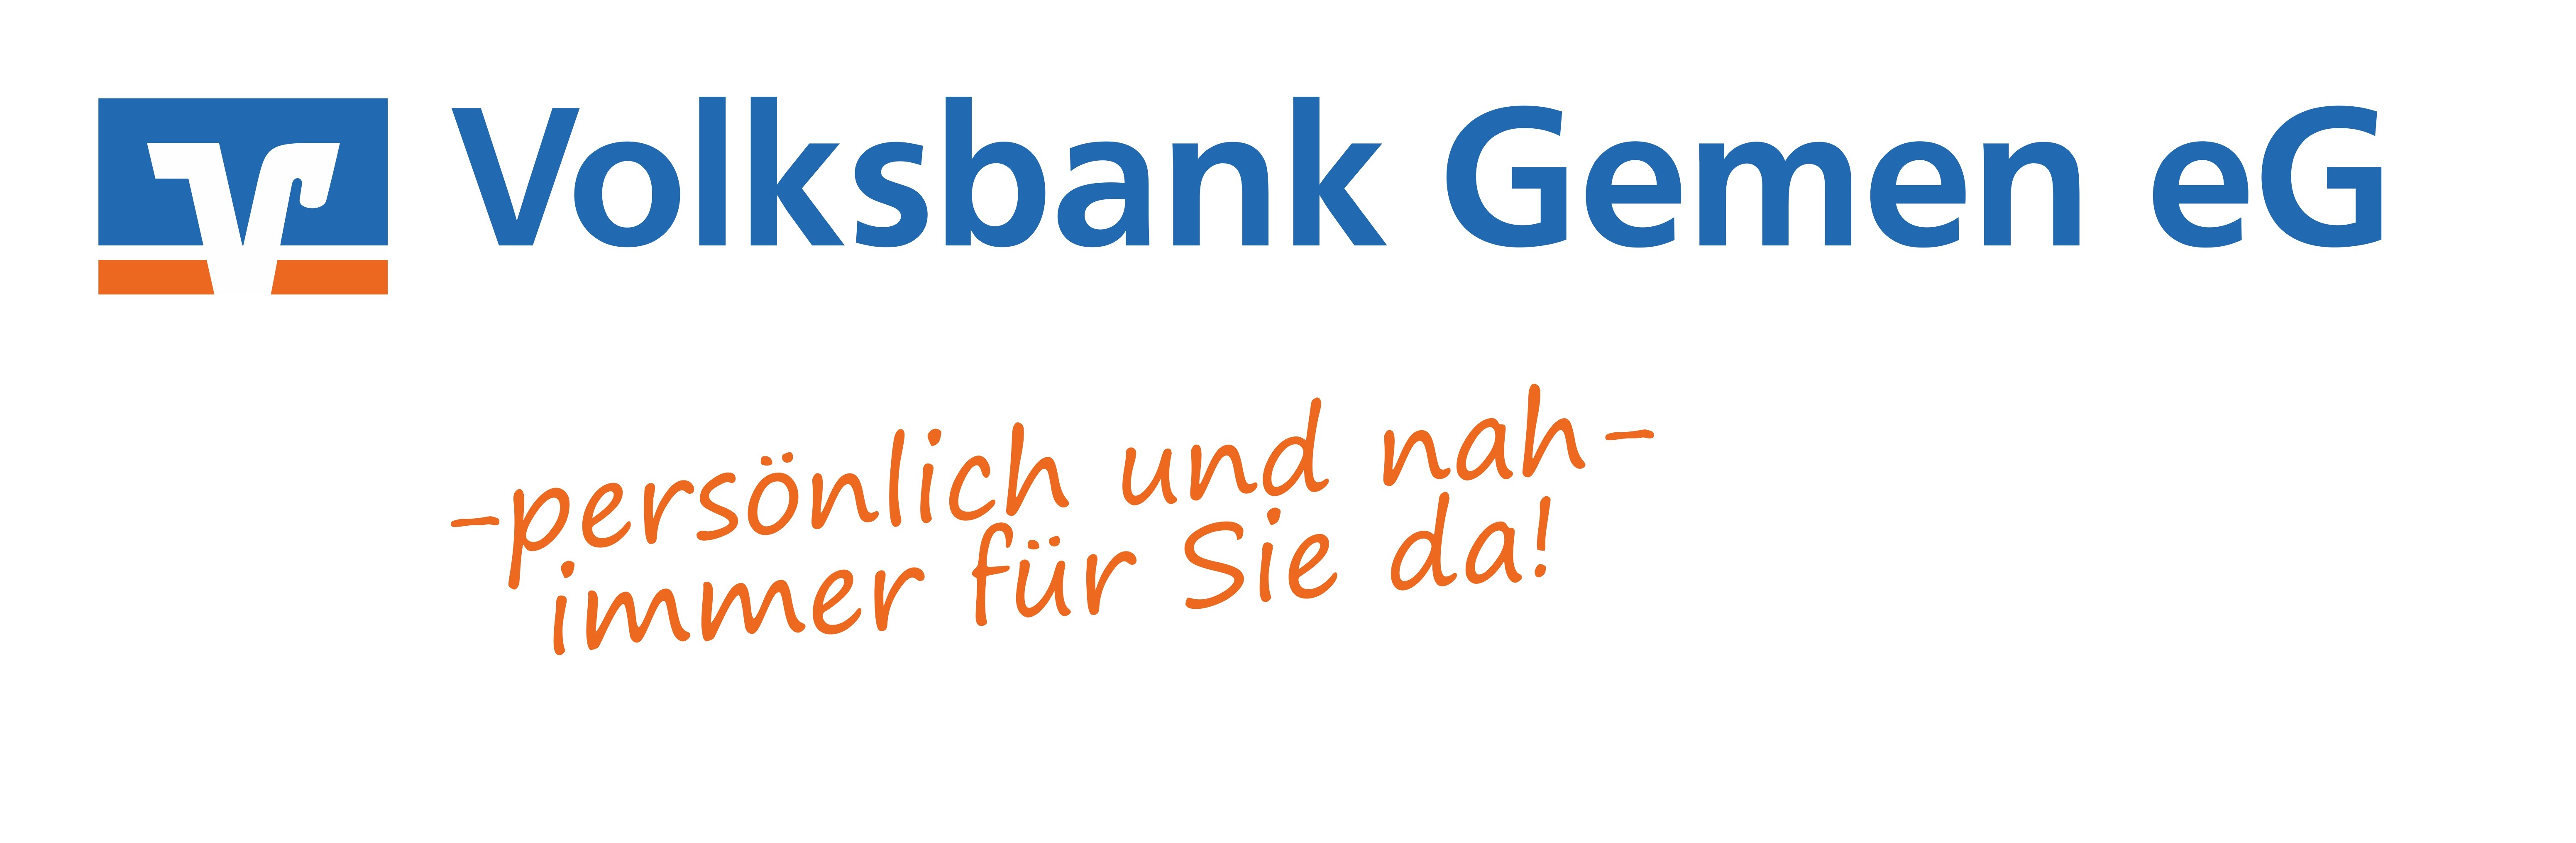 Volksbank Gemen eG<br>